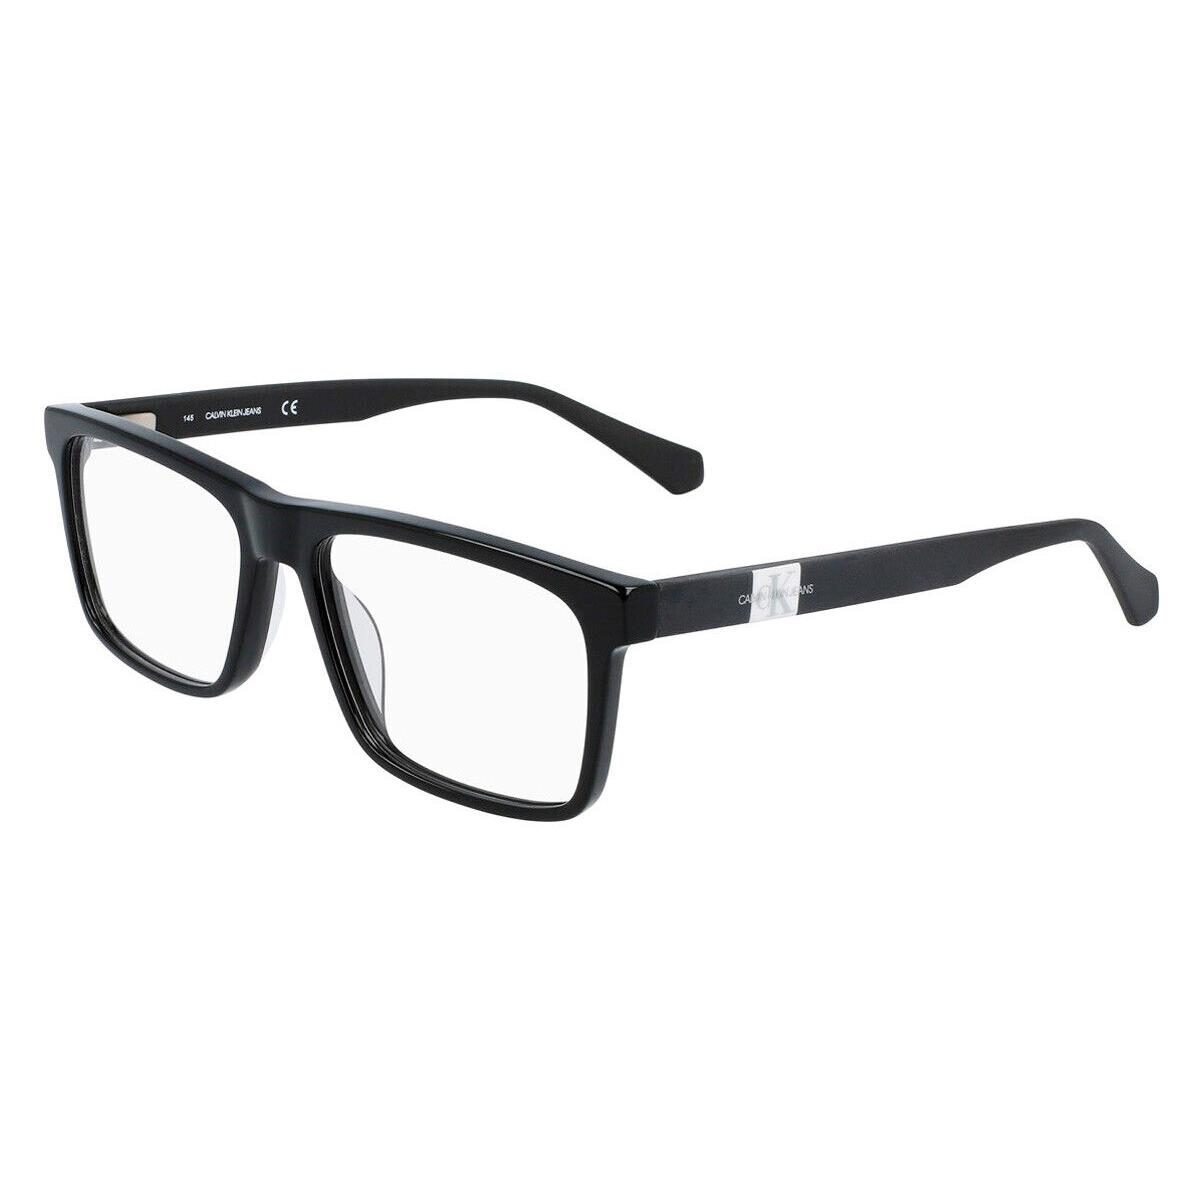 Calvin Klein CKJ21614 Eyeglasses Men Black Square 55mm - Frame: Black, Lens: